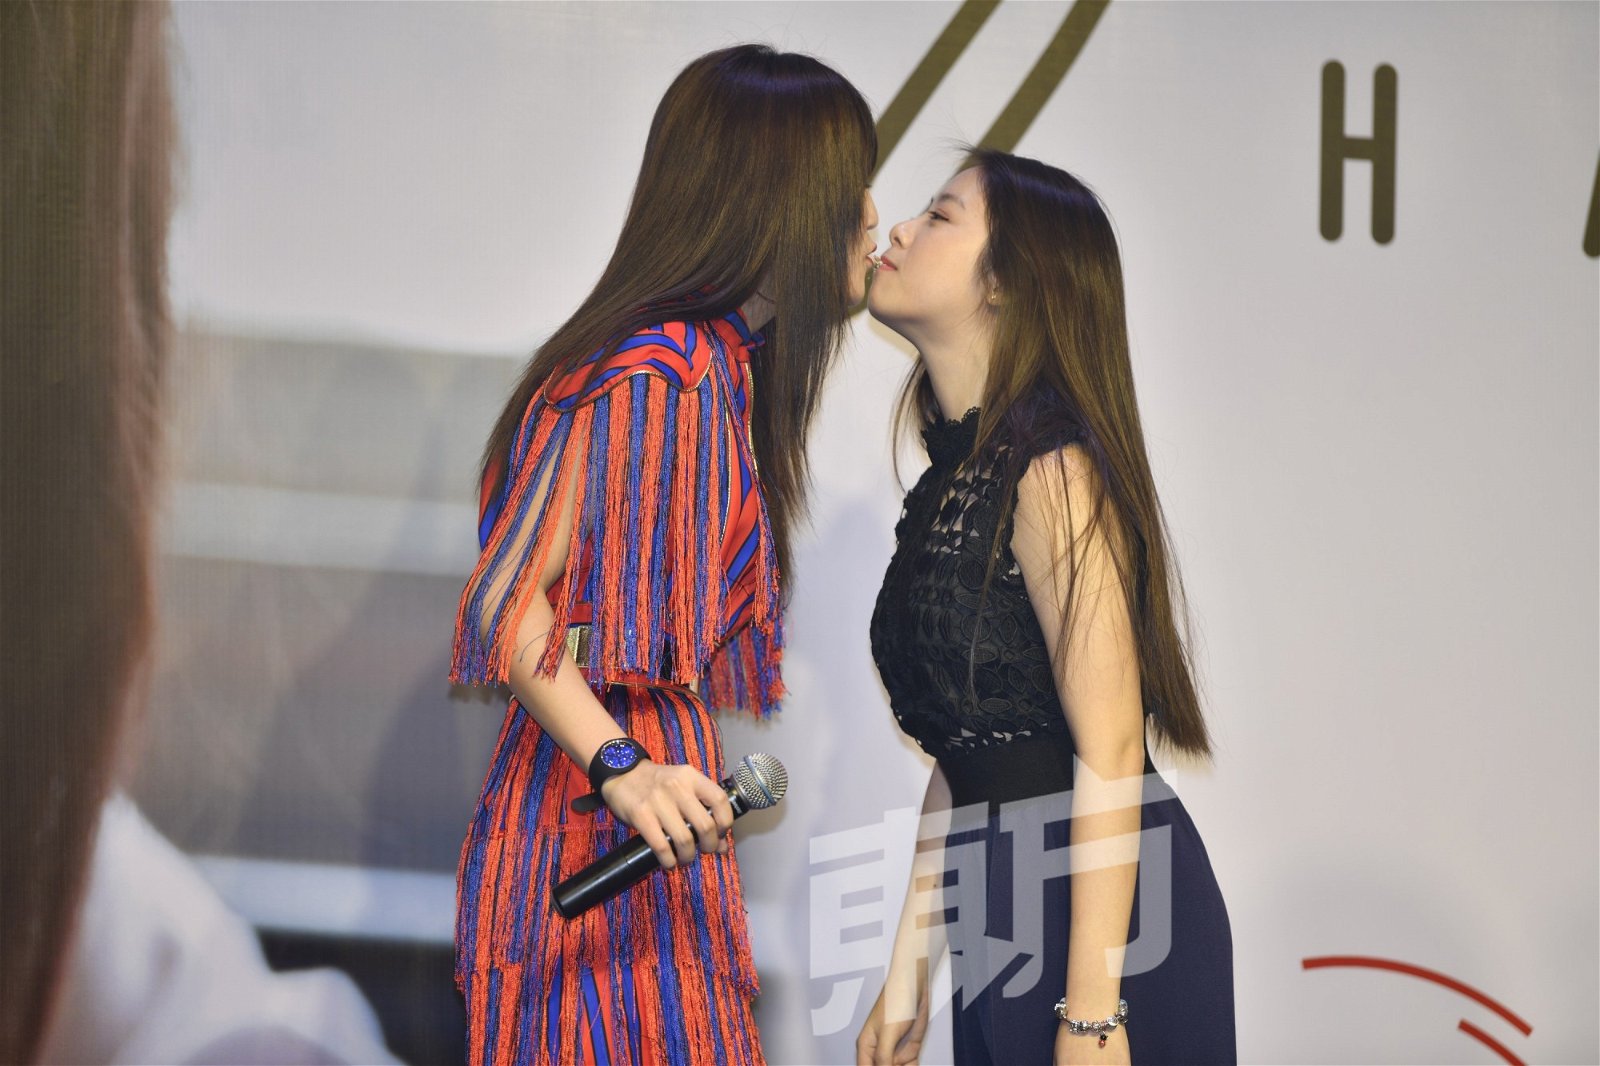 粉丝福利环节上，韩晓嗳与女粉丝玩嘴对嘴吃Pocky游戏，她直接亲上去，玩得超放。